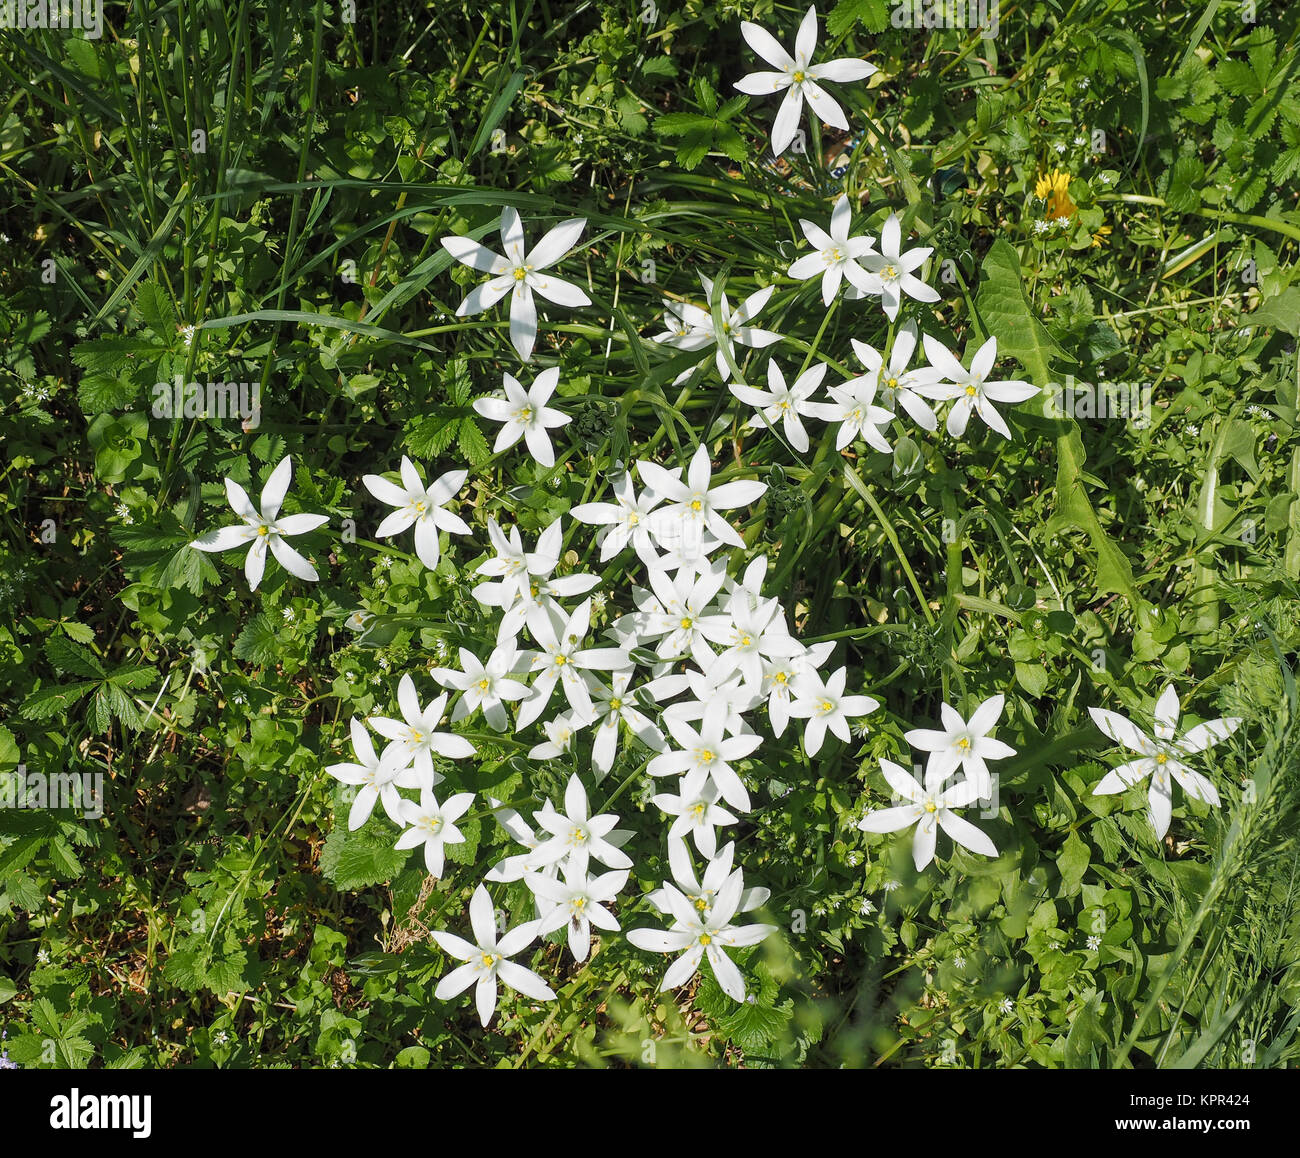 Star of Bethlehem flower Stock Photo